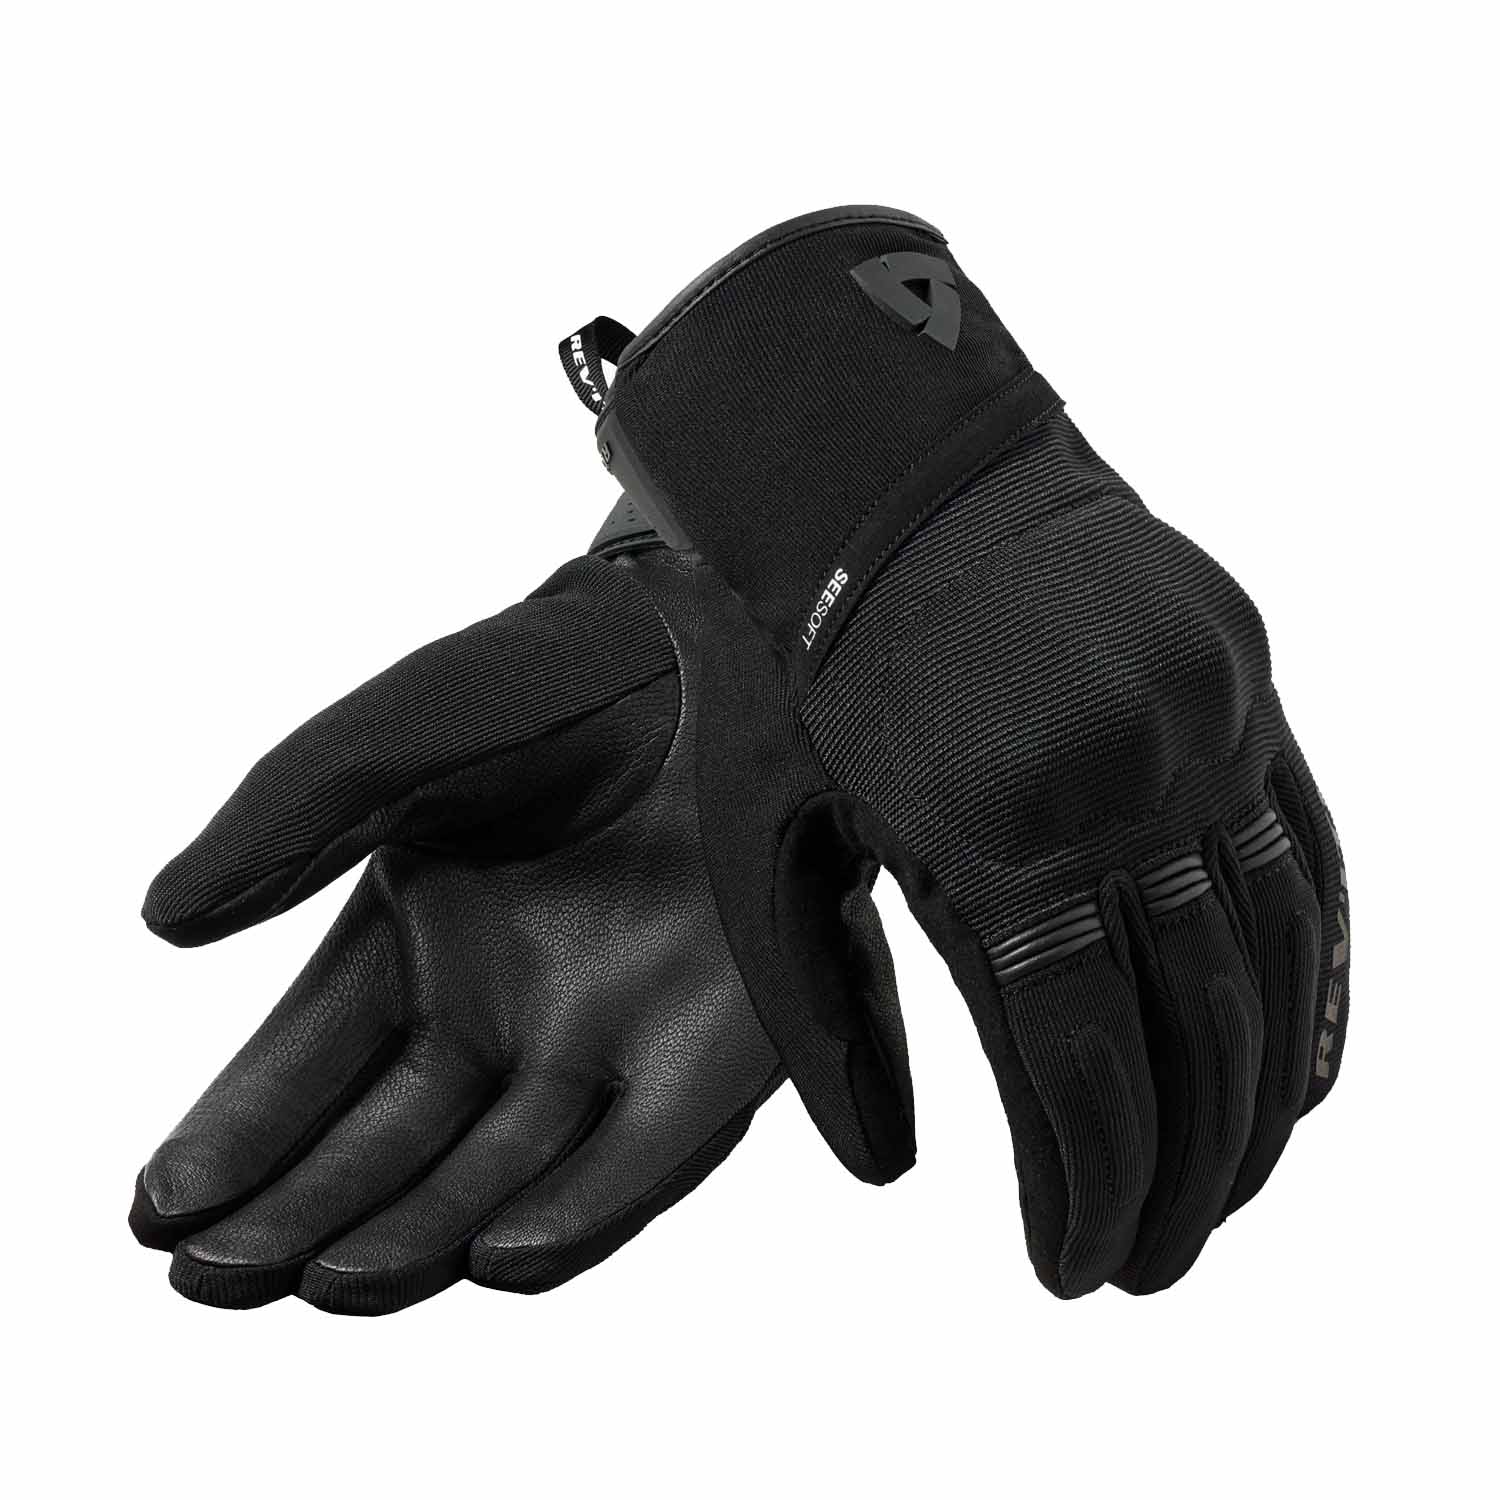 Image of REV'IT! Mosca 2 H2O Gloves Black Size 2XL EN